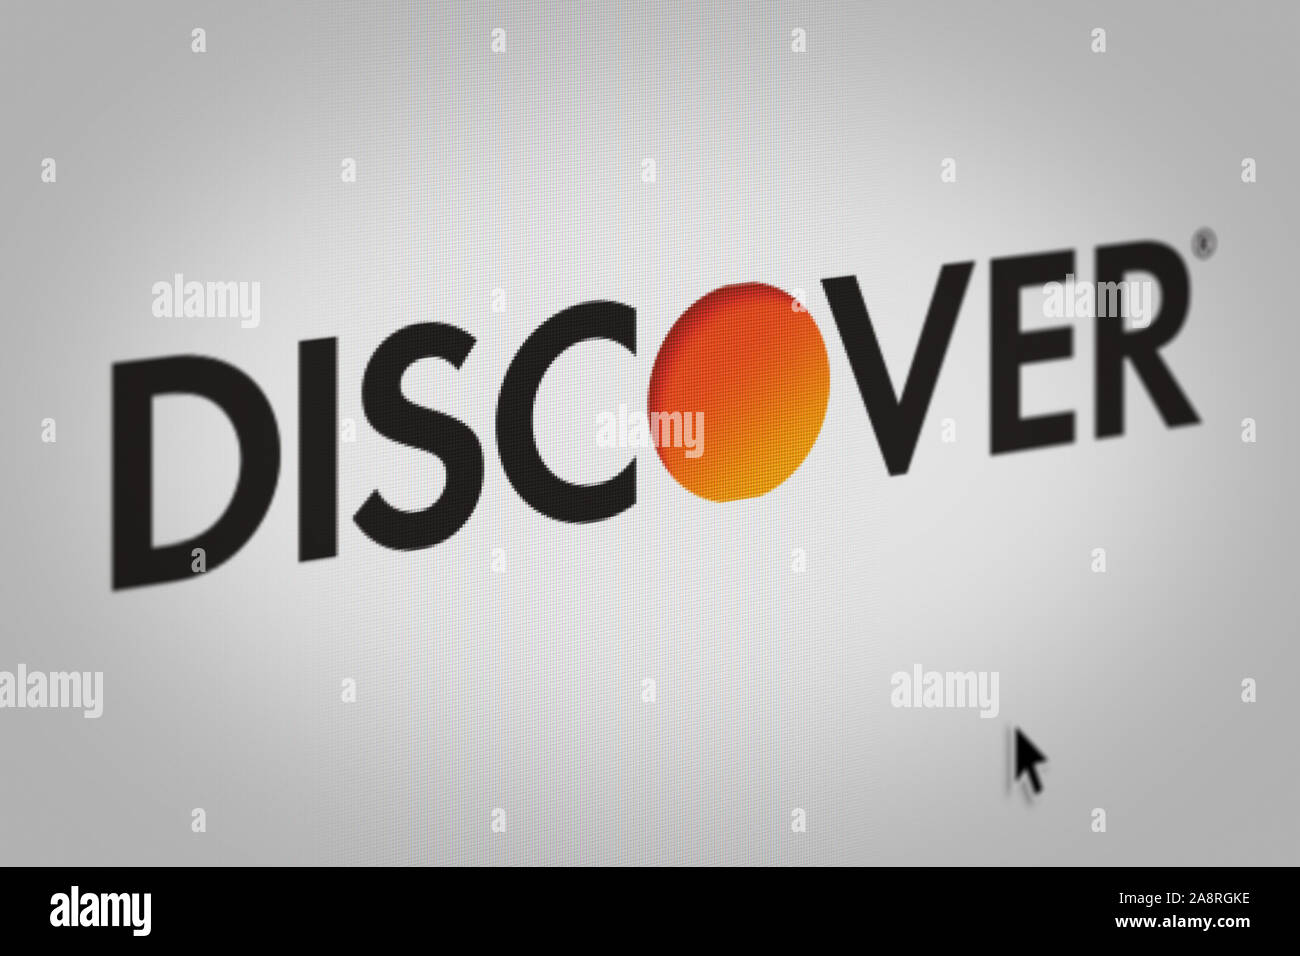 Logo der öffentlichen Unternehmen Discover Financial Services auf einem Bildschirm in der Nähe angezeigt. Credit: PIXDUCE Stockfoto